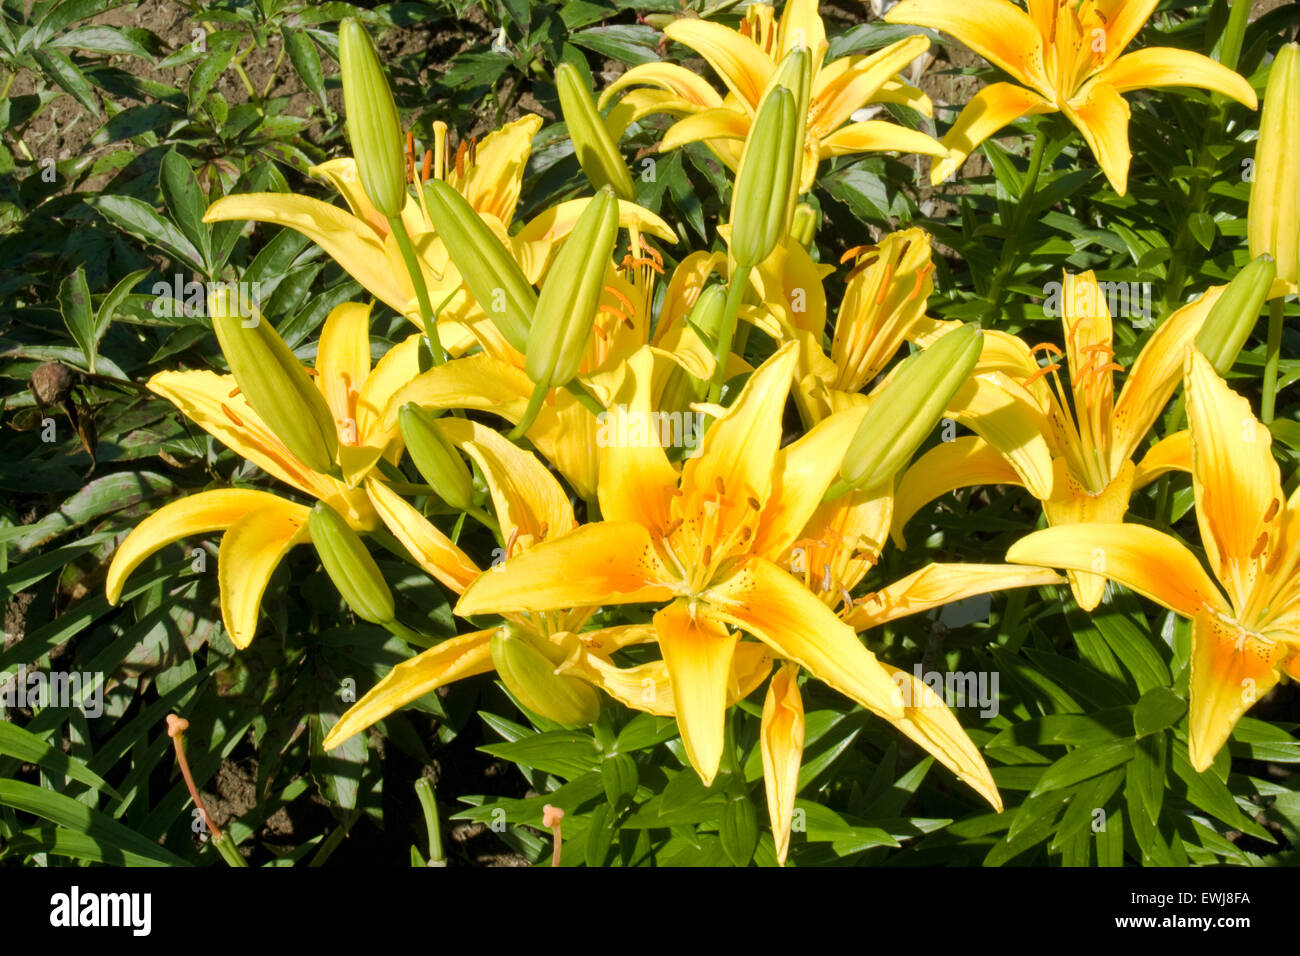 The graceful summer garden lilies. Stock Photo